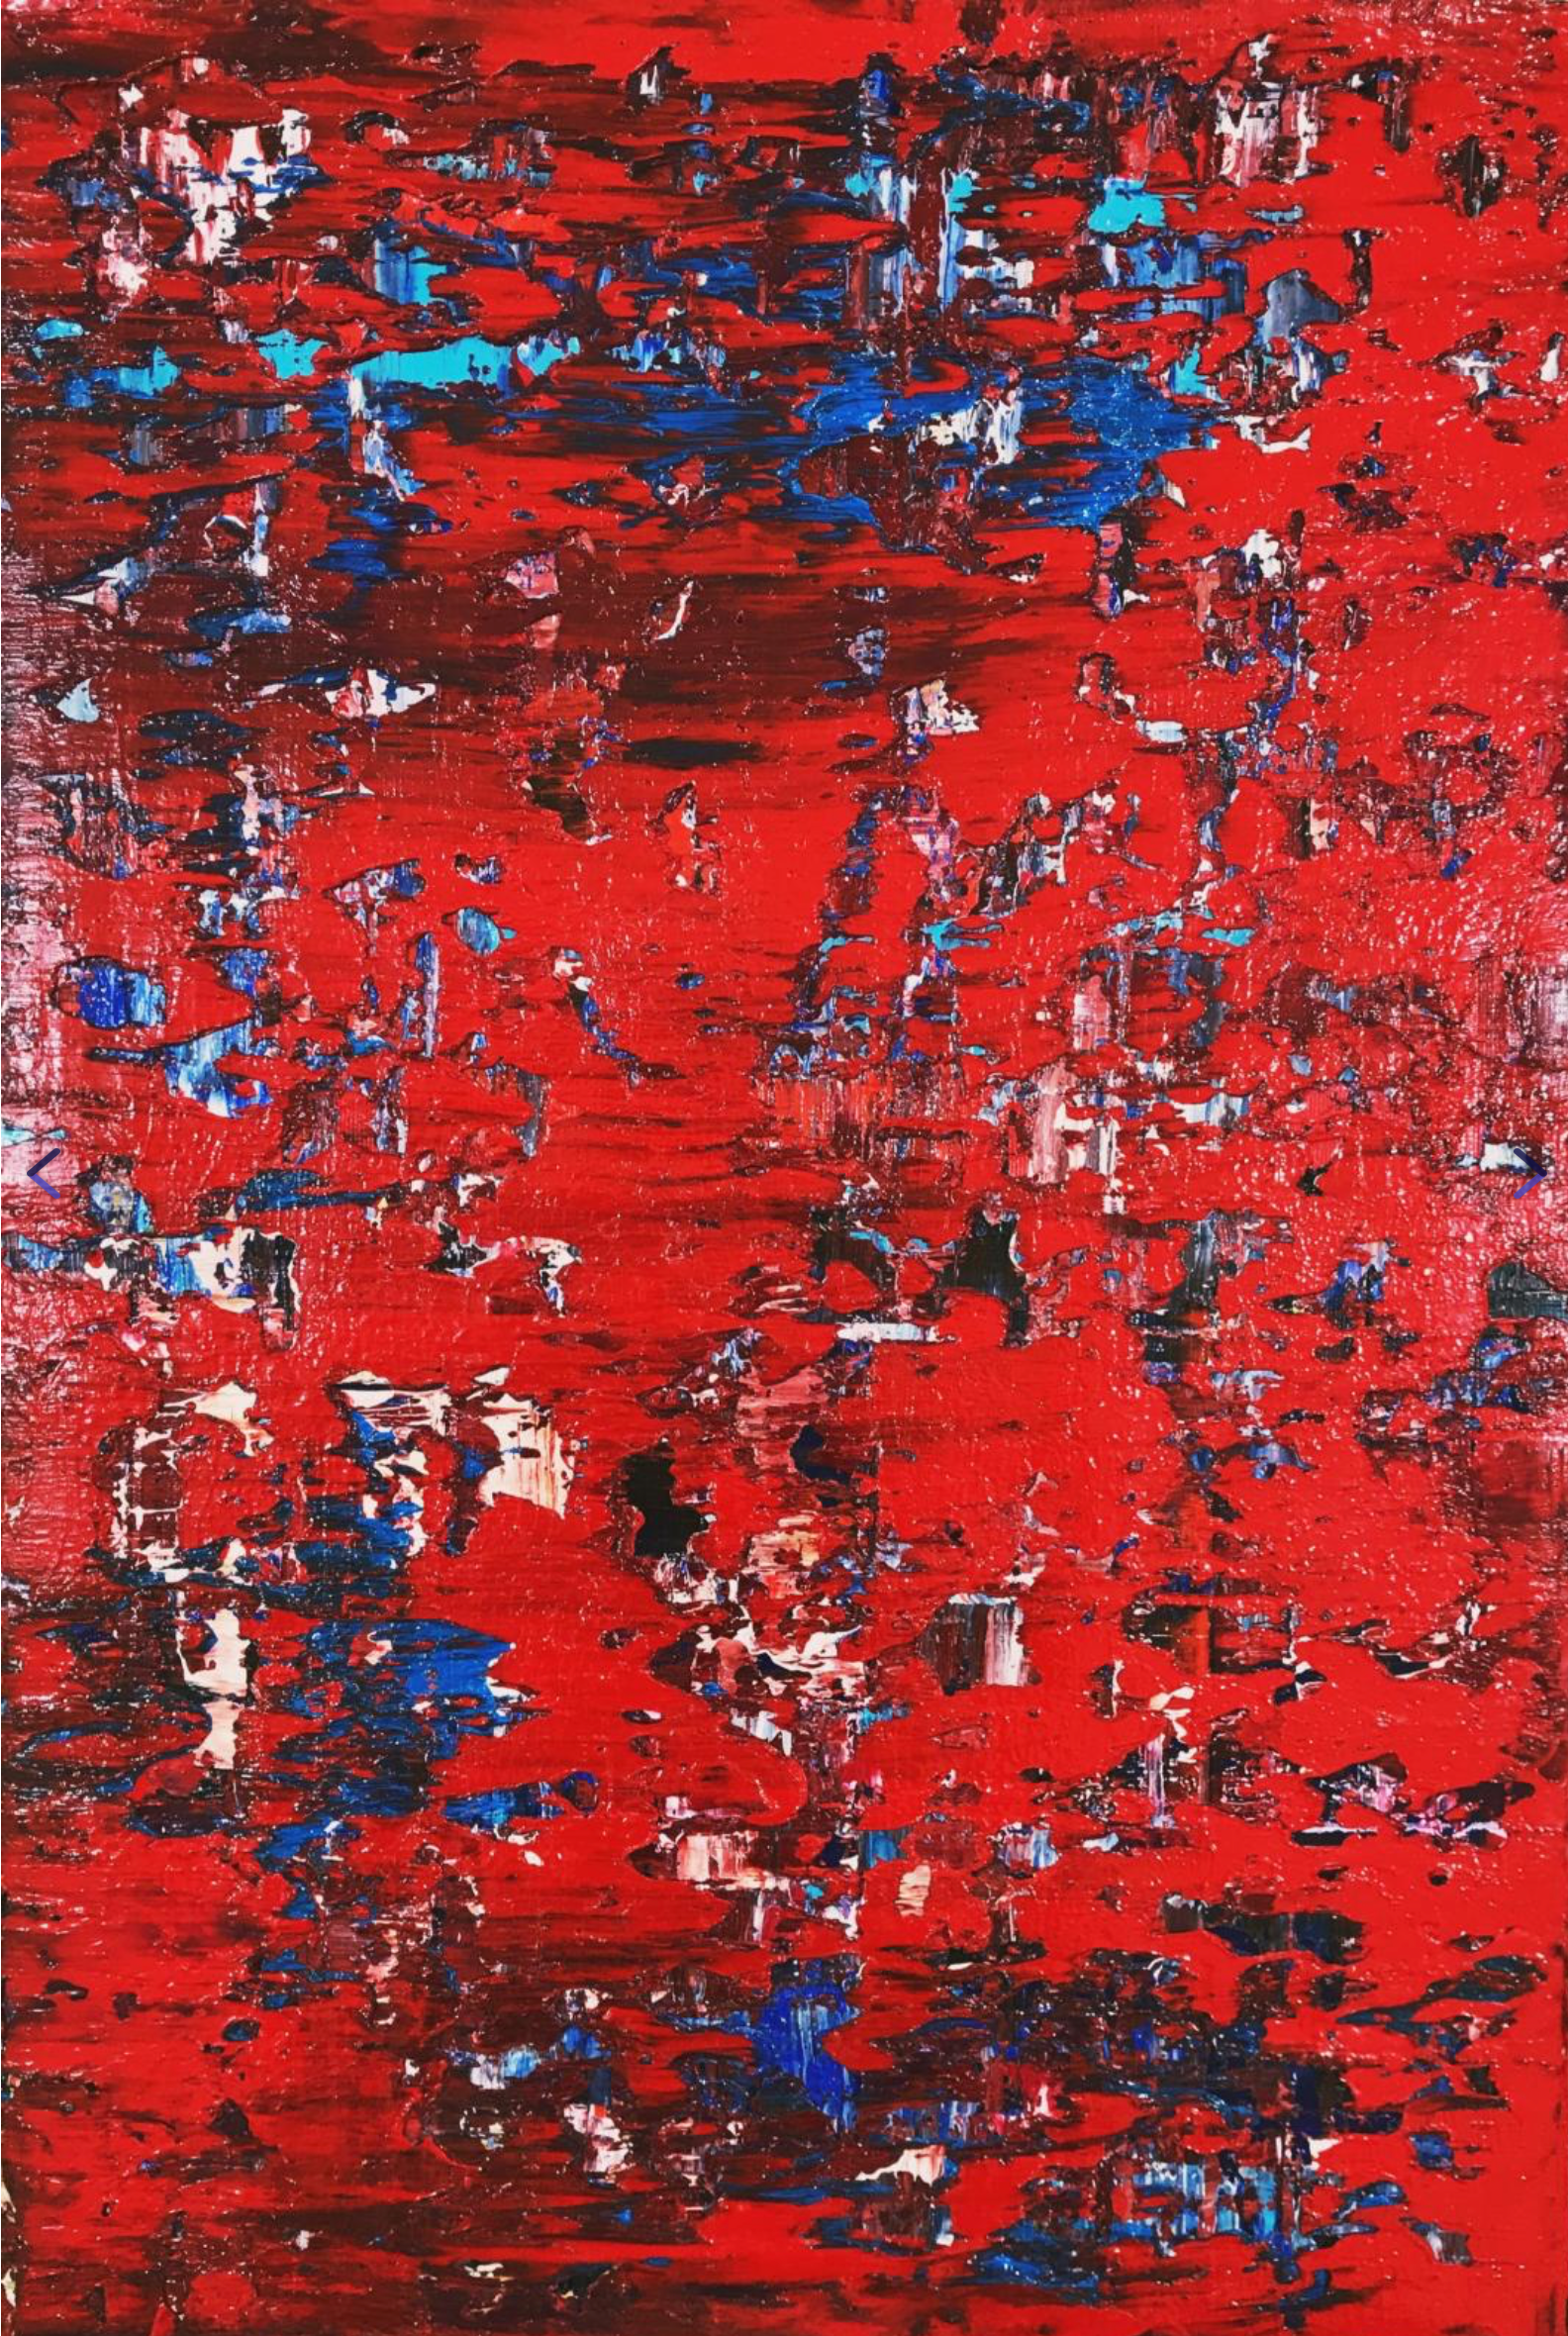 Svitlana Andriichenko ist eine Ukraine/Deutsche Malerei-Künstlerin. "Red Zone. A32" ist ein abstraktes Bild. Rot sind die dominierende Farben.